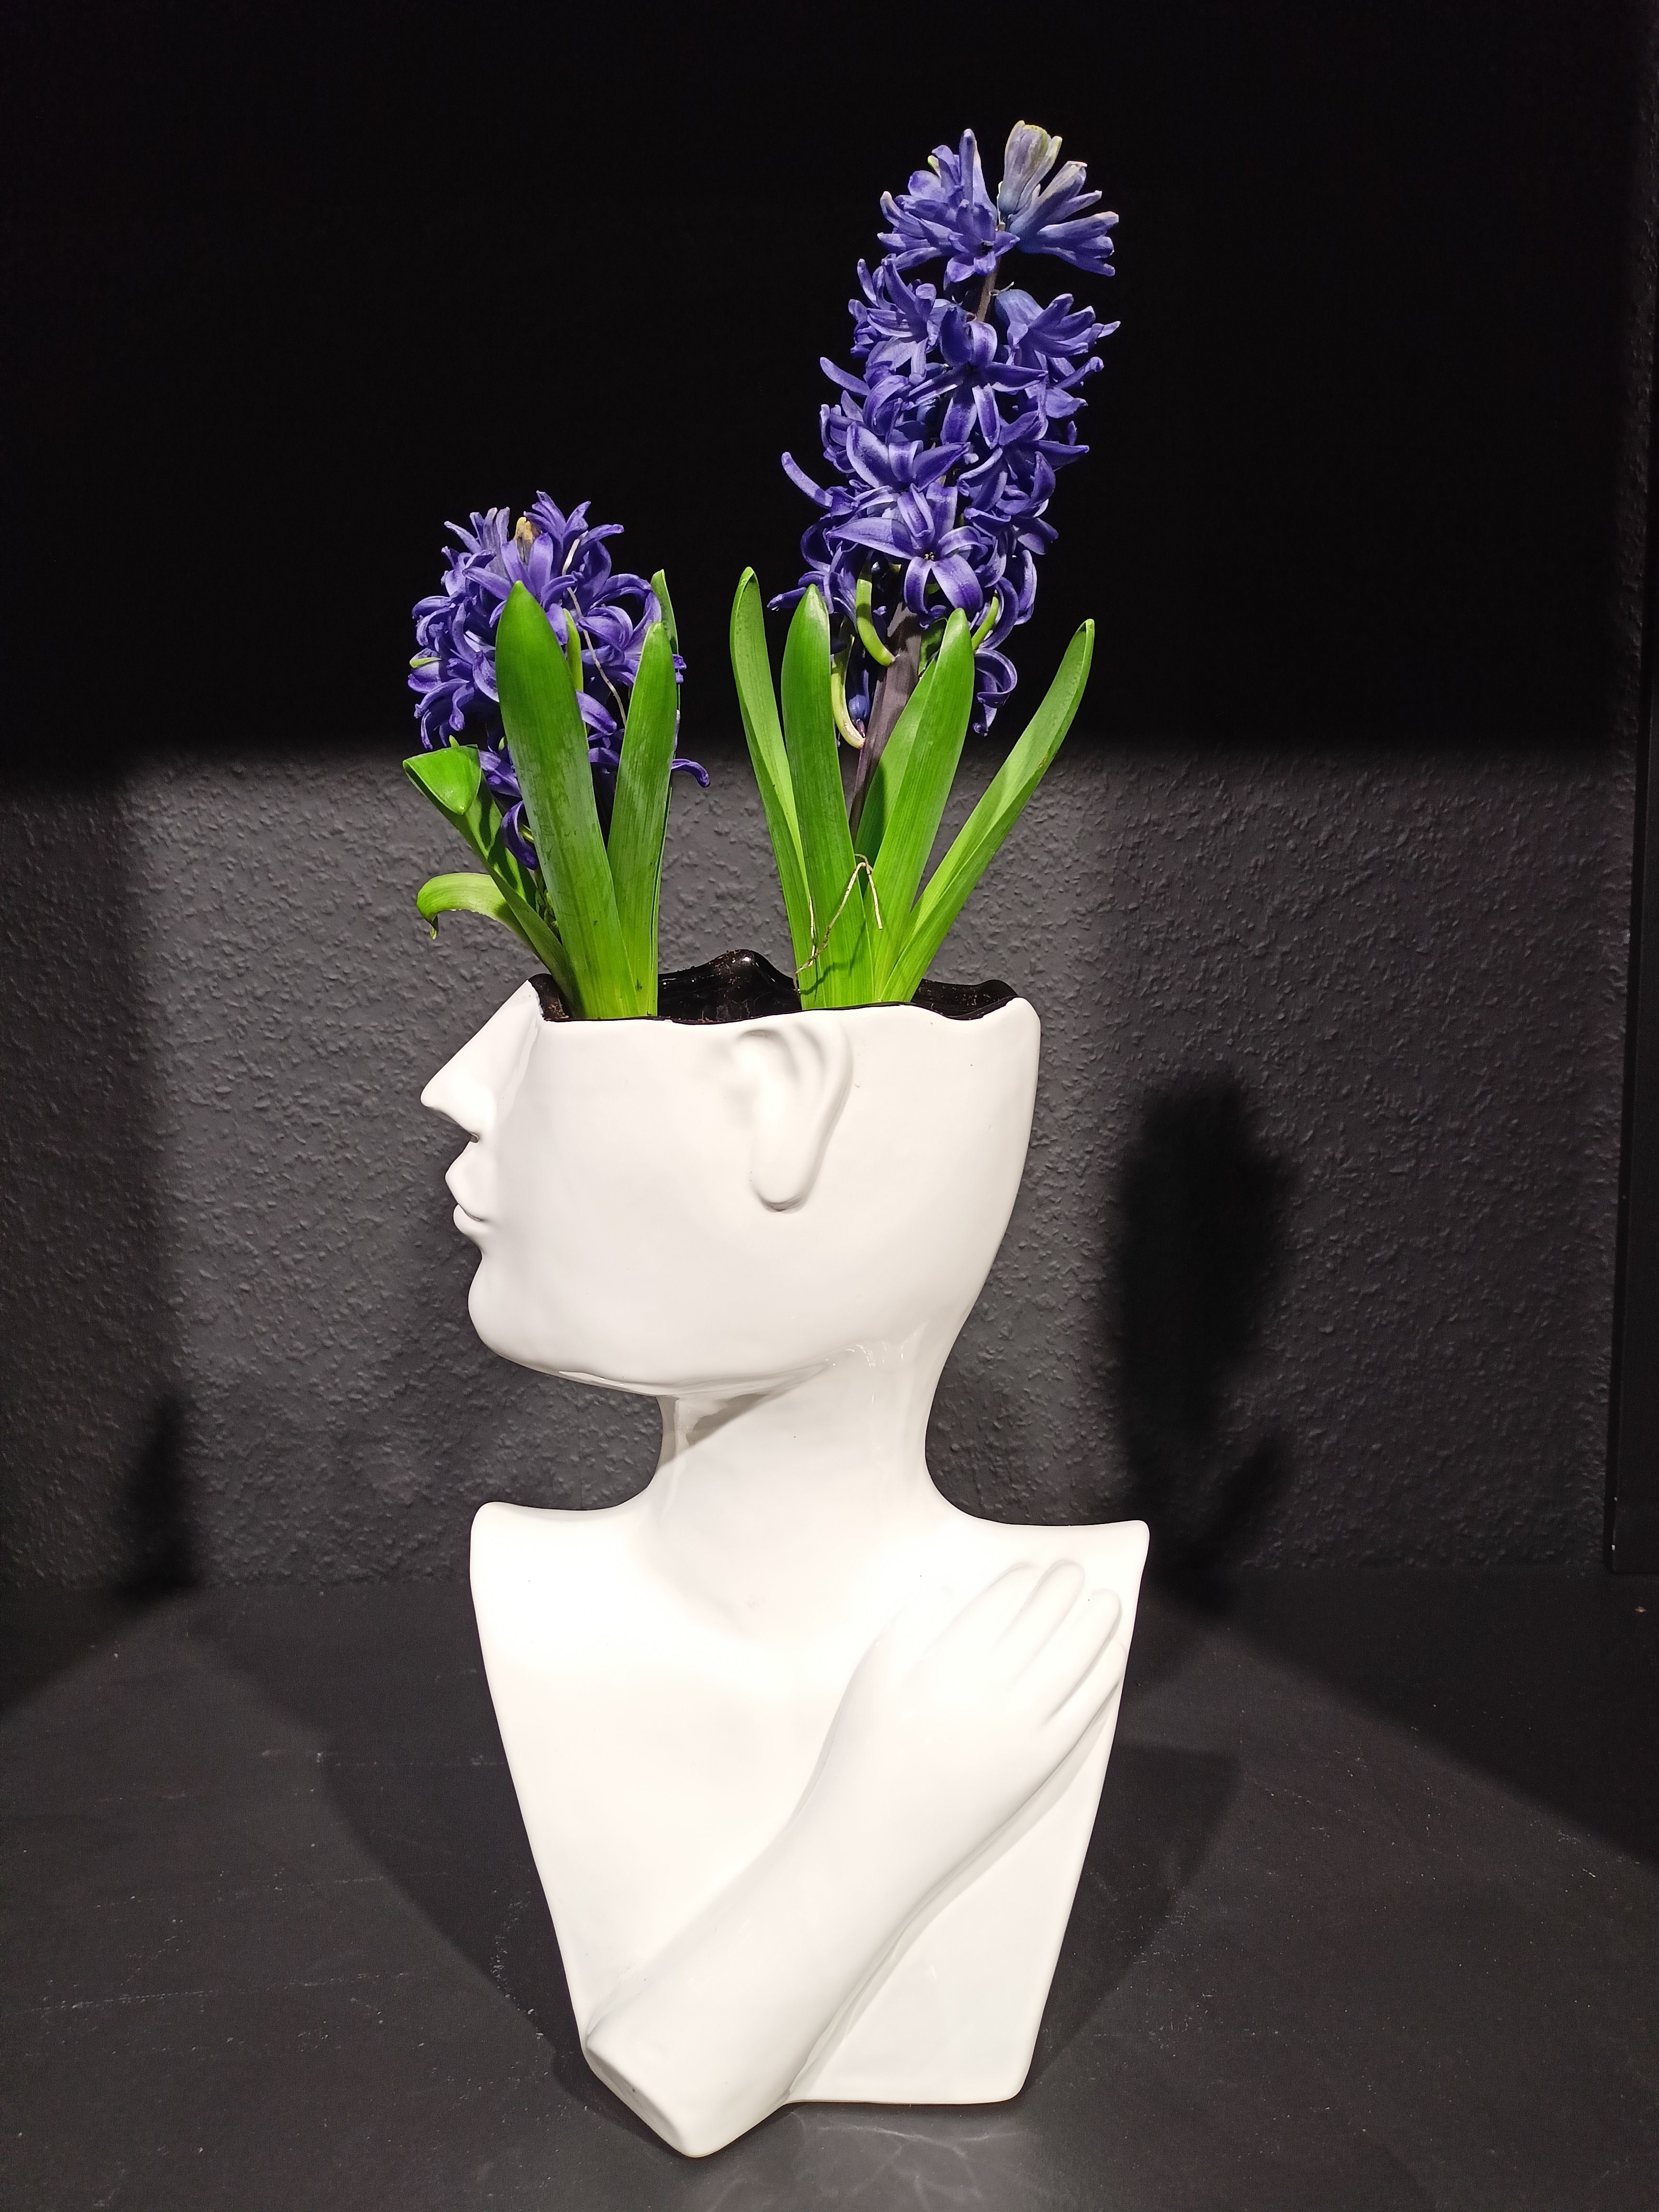 GlasArt Dekovase Vase 26 Vase Keramik Wohnzimmer Blumenvase weiß Gesicht cm